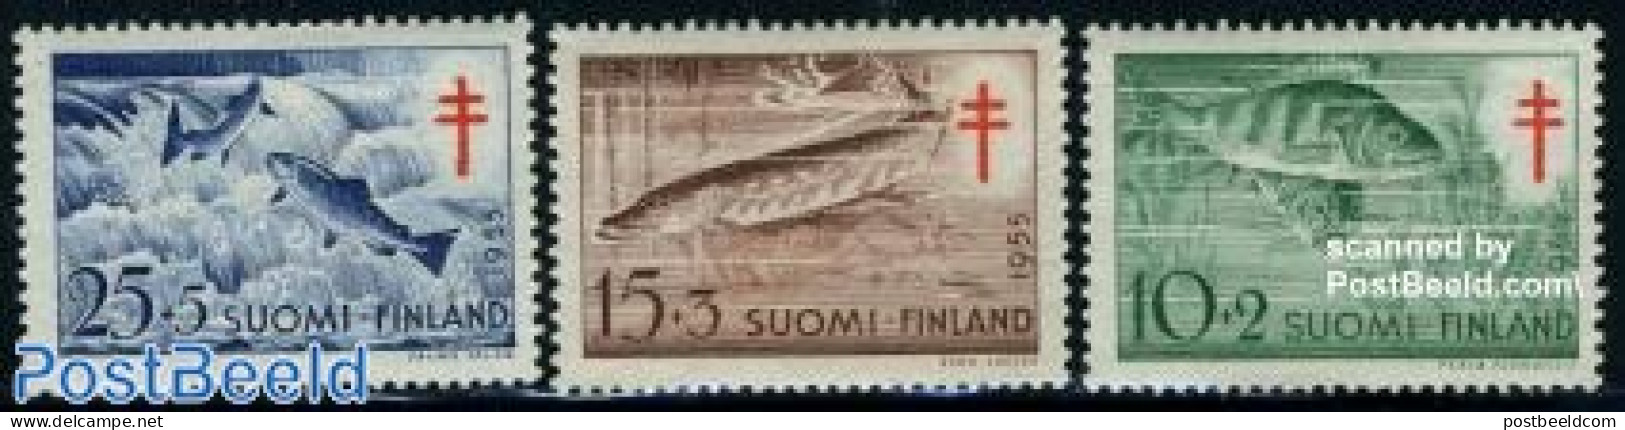 Finland 1955 Anti Tuberculosis, Fish 3v, Mint NH, Health - Nature - Anti Tuberculosis - Fish - Nuevos